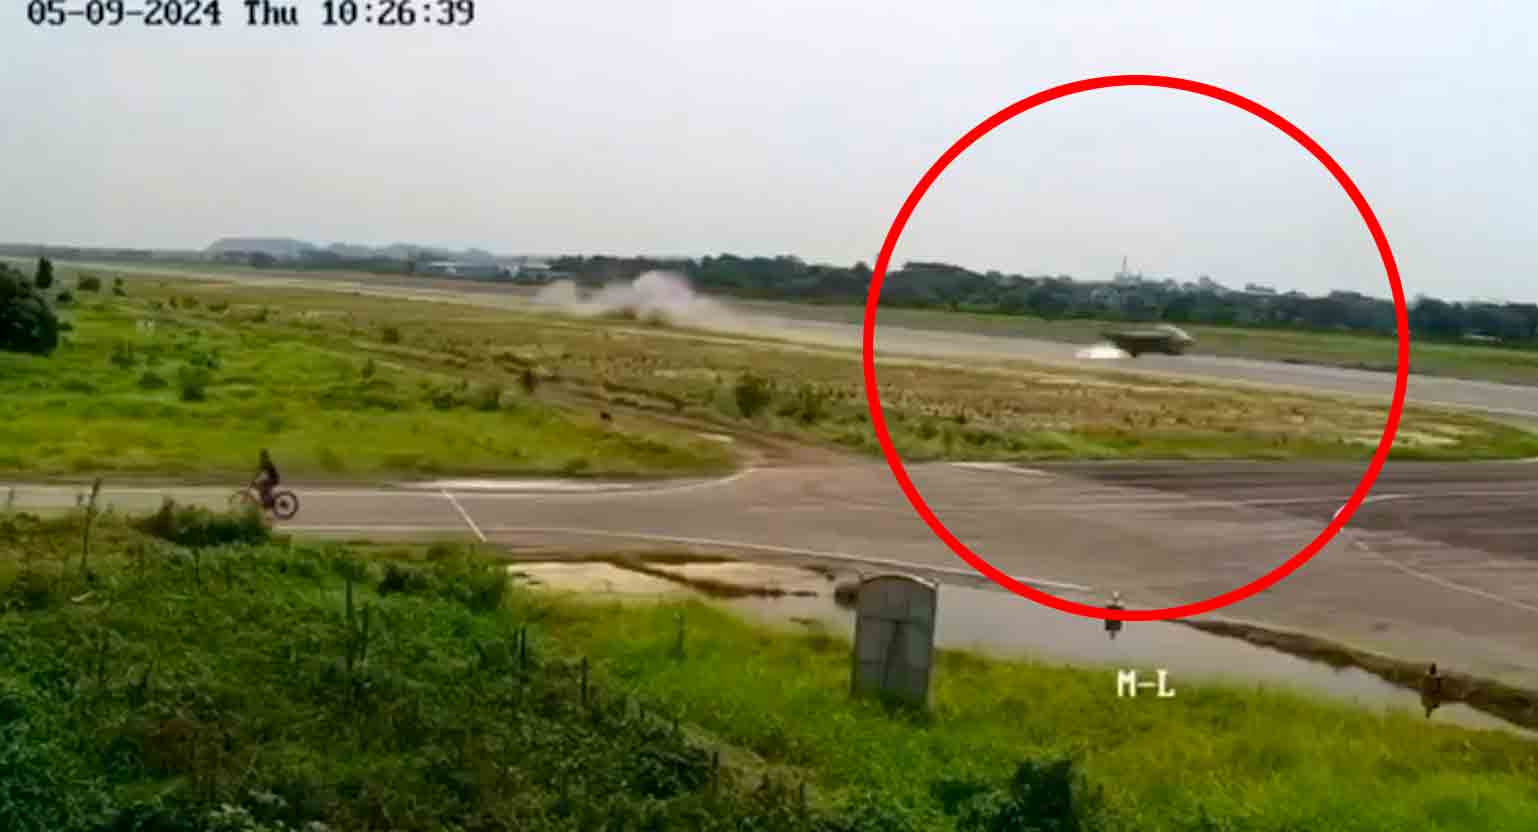 Wideo: Myśliwiec Yak-130 Sił Powietrznych Bangladeszu rozbija się po błędzie pilota w ryzykownym manewrze. Zdjęcie: Twitter @RealAirPower1